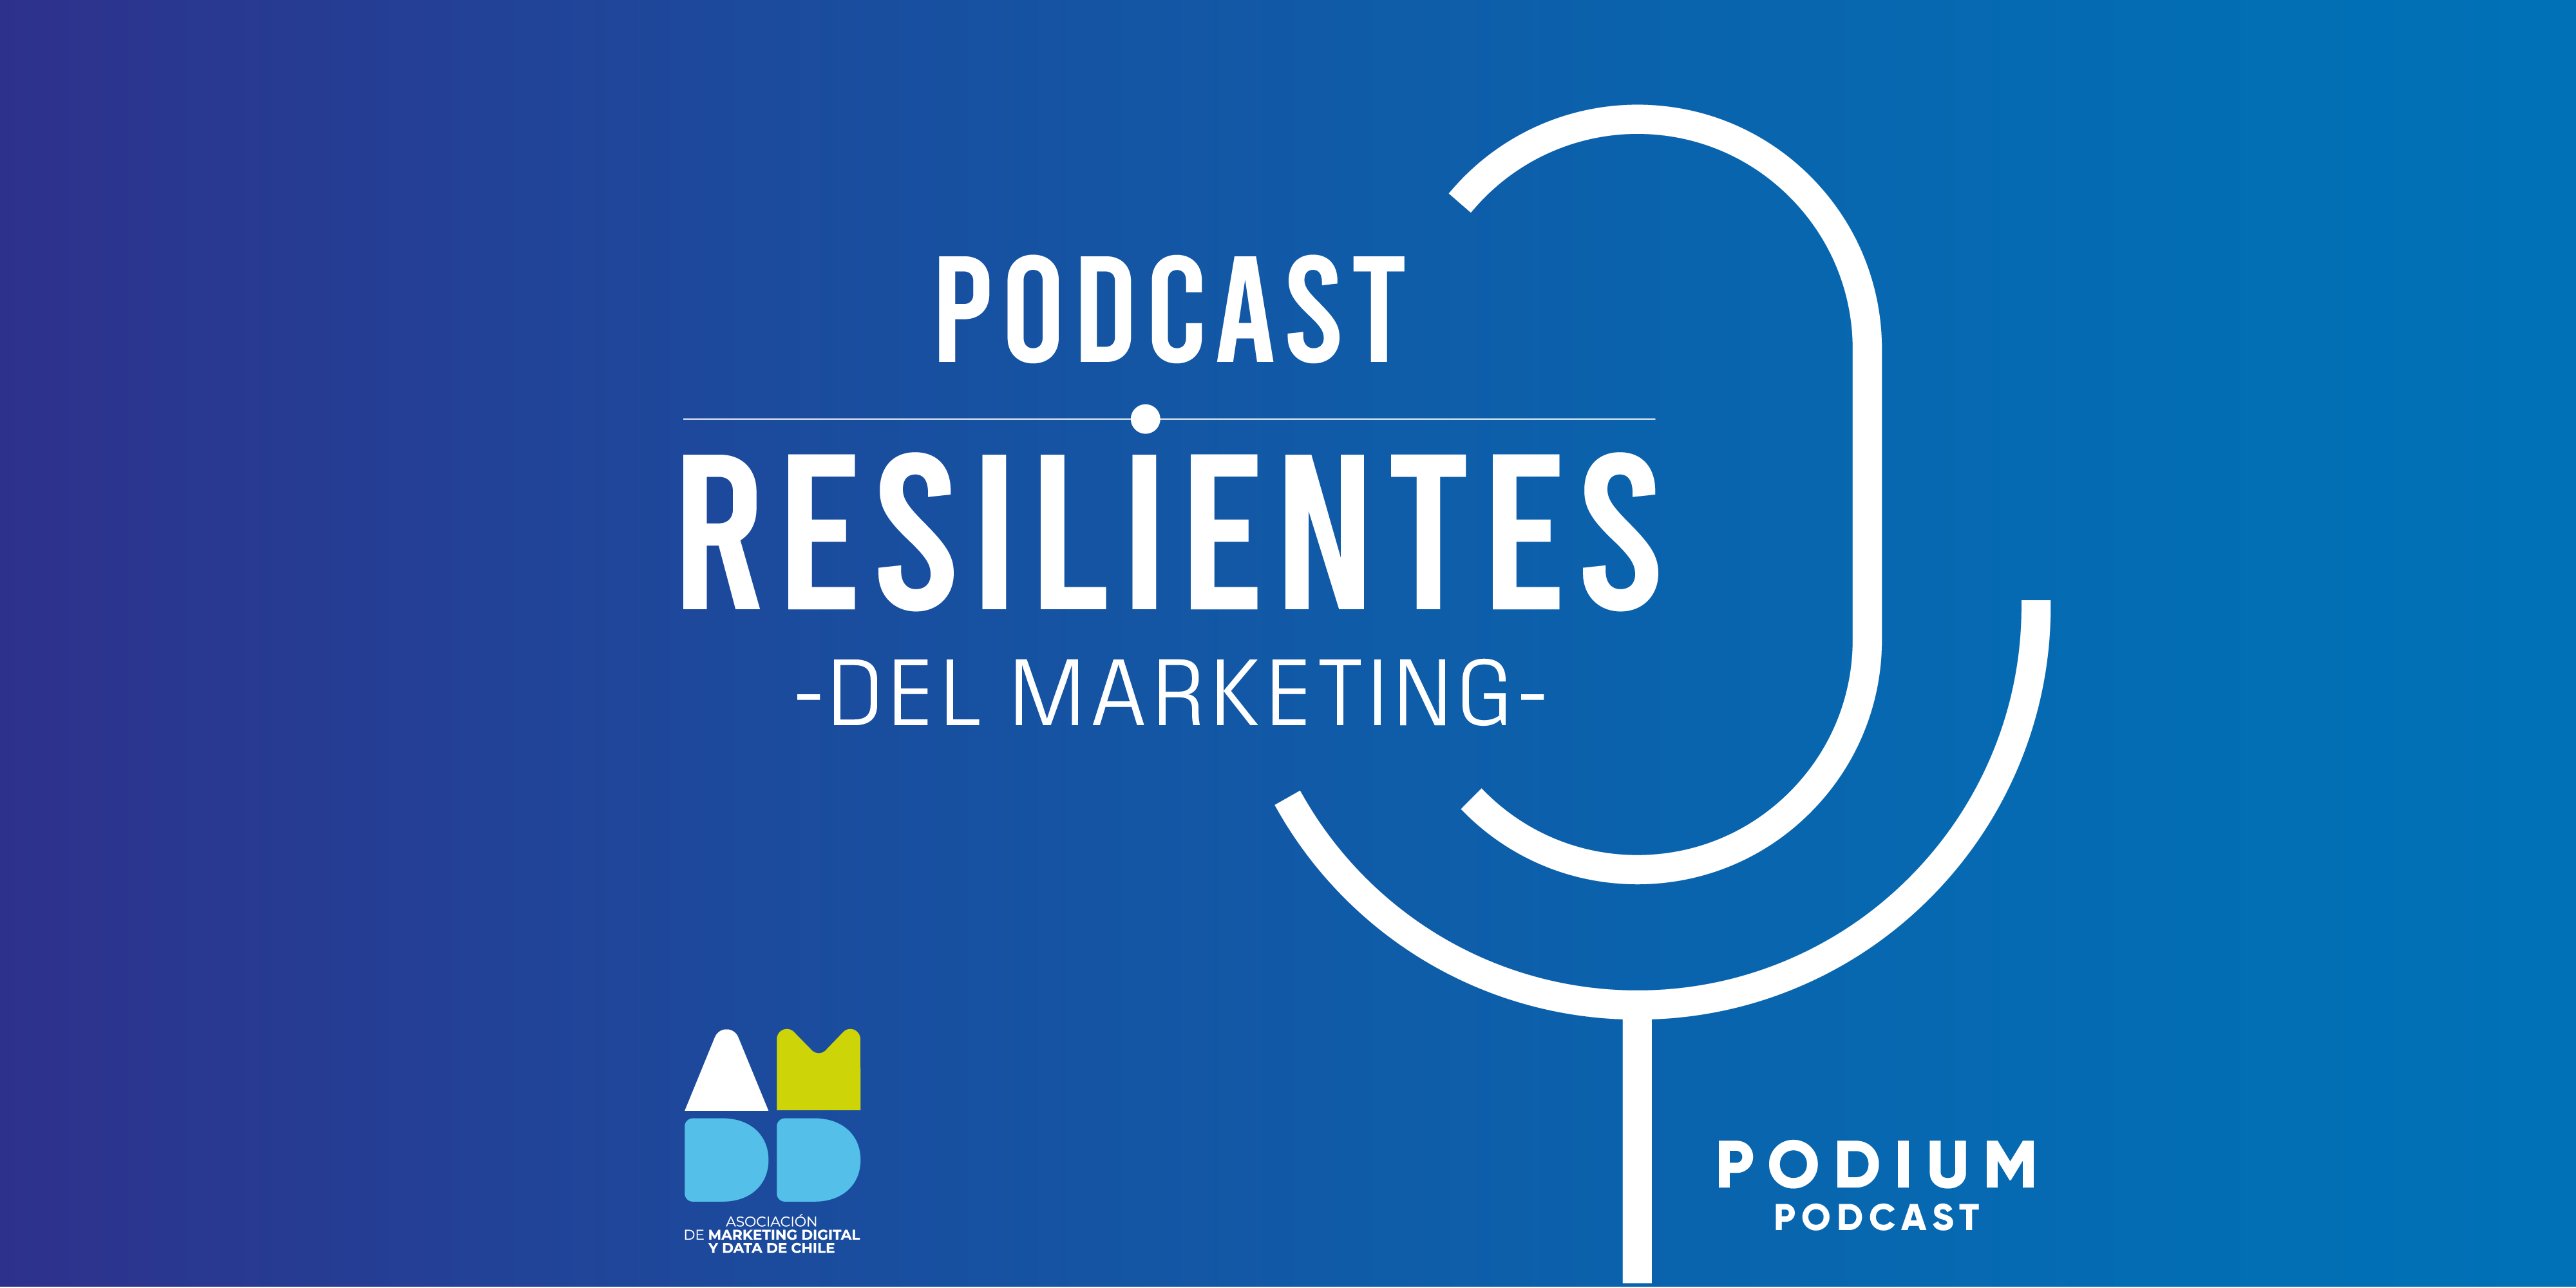 Resilientes del marketing, el podcast de la AMDD en conjunto con Podium Podcast, estrena su segunda temporada.